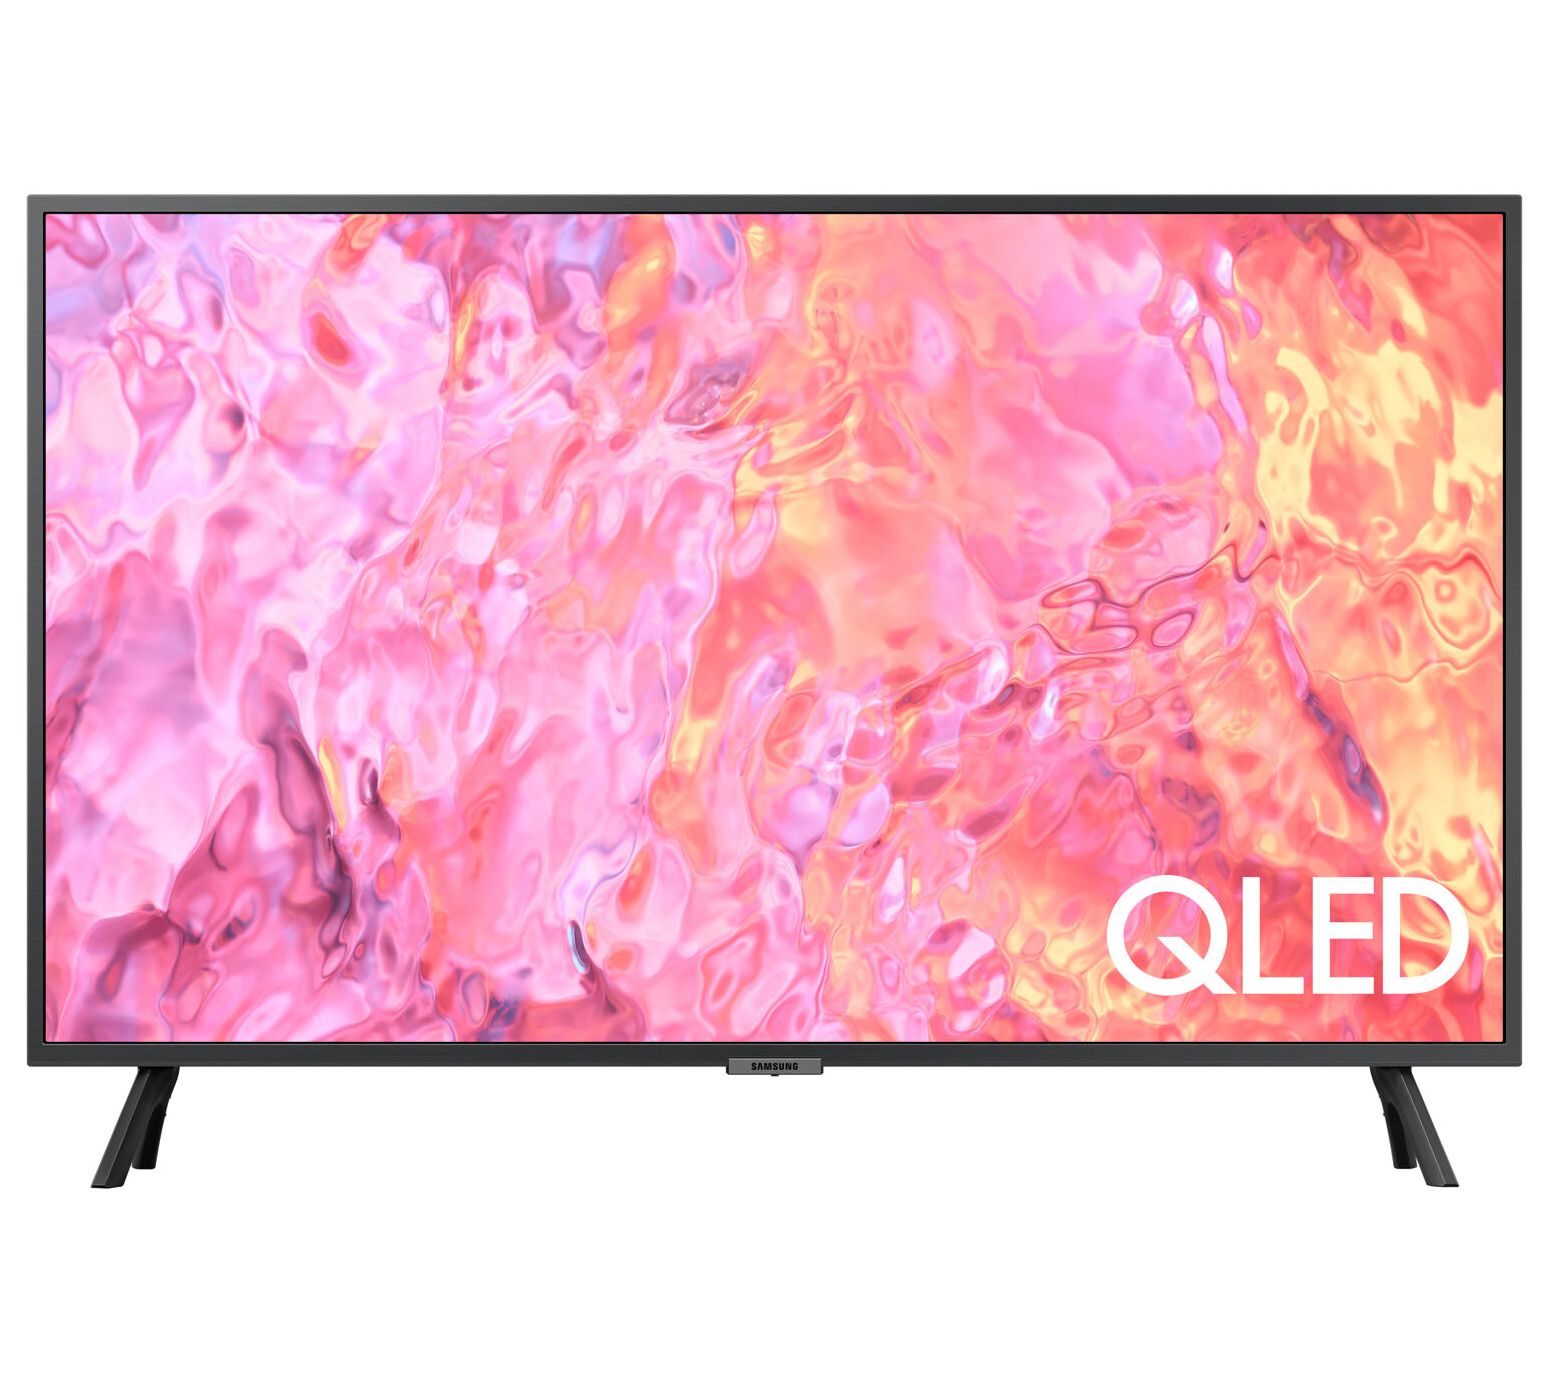 IQ 50 inches (127 cm) Frameless 4K Ultra HD Smart TV - IQ Electronics